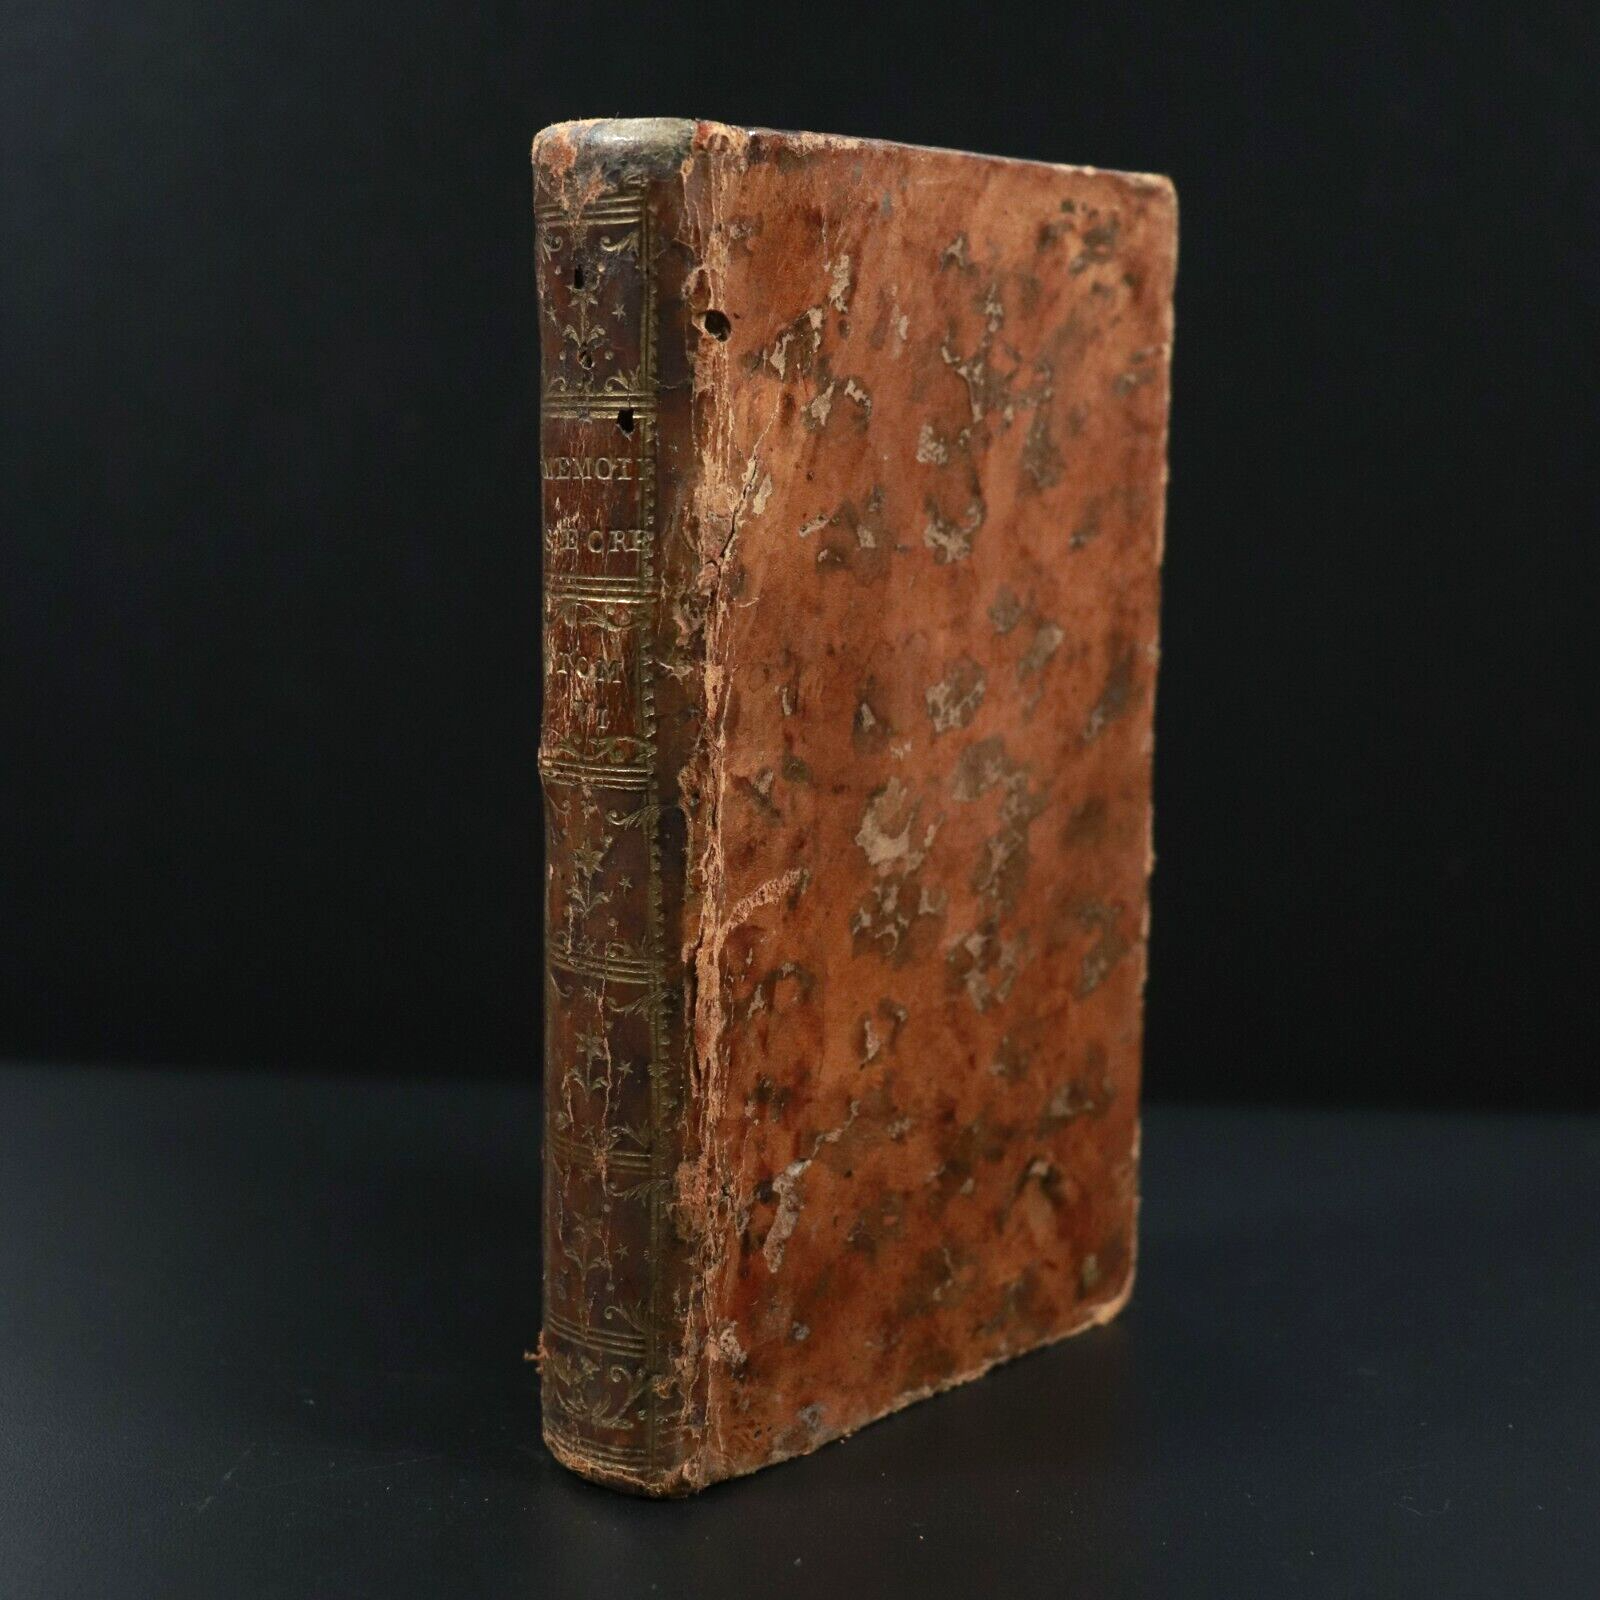 1744 Memoires Secrets De La Republique Des Lettres Antiquarian Literature Book